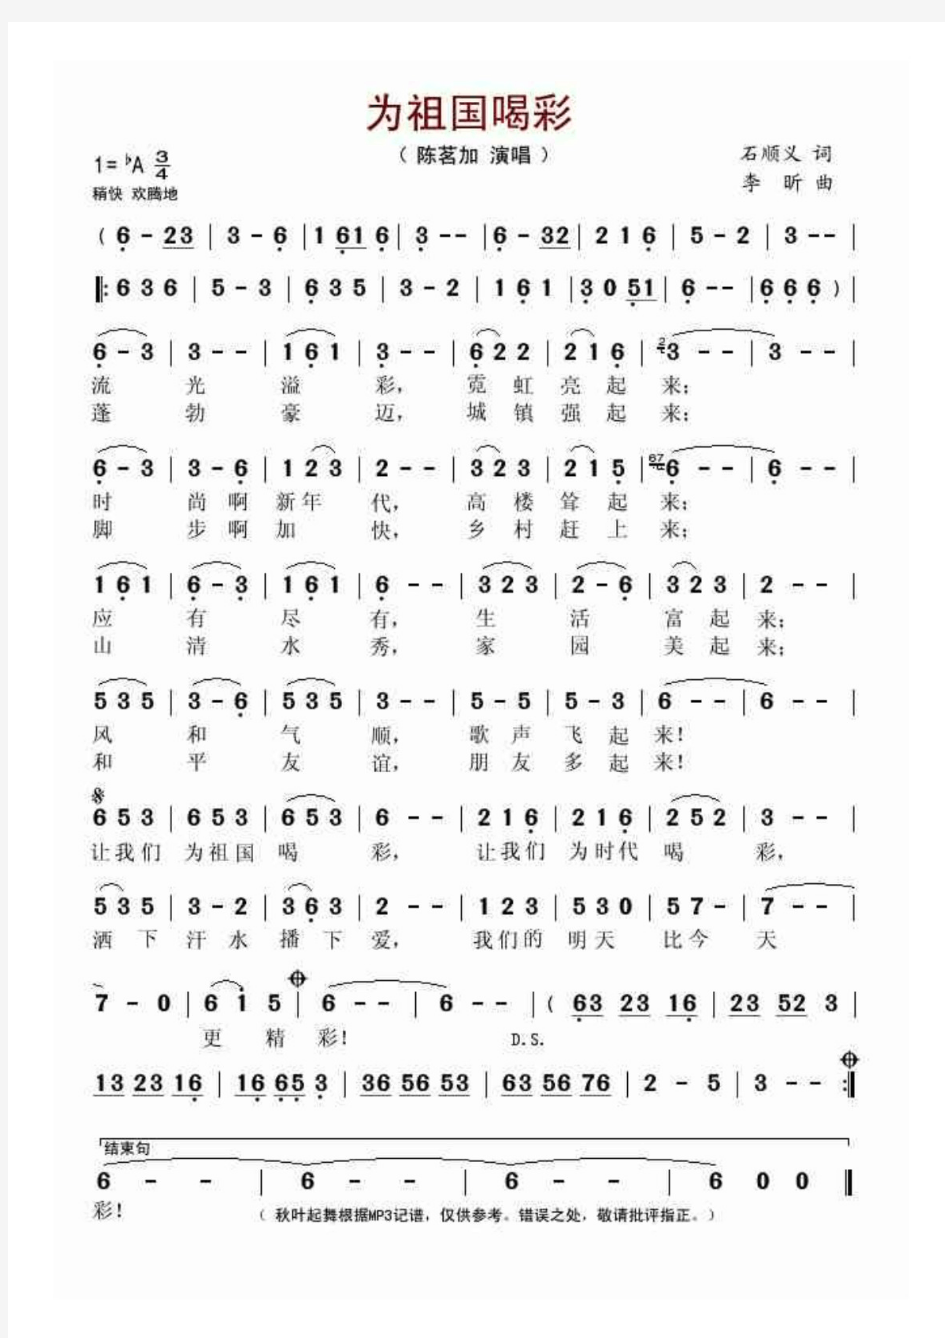 雨的节奏(萨克斯谱) 正谱 五线谱 钢琴谱 乐谱.pdf